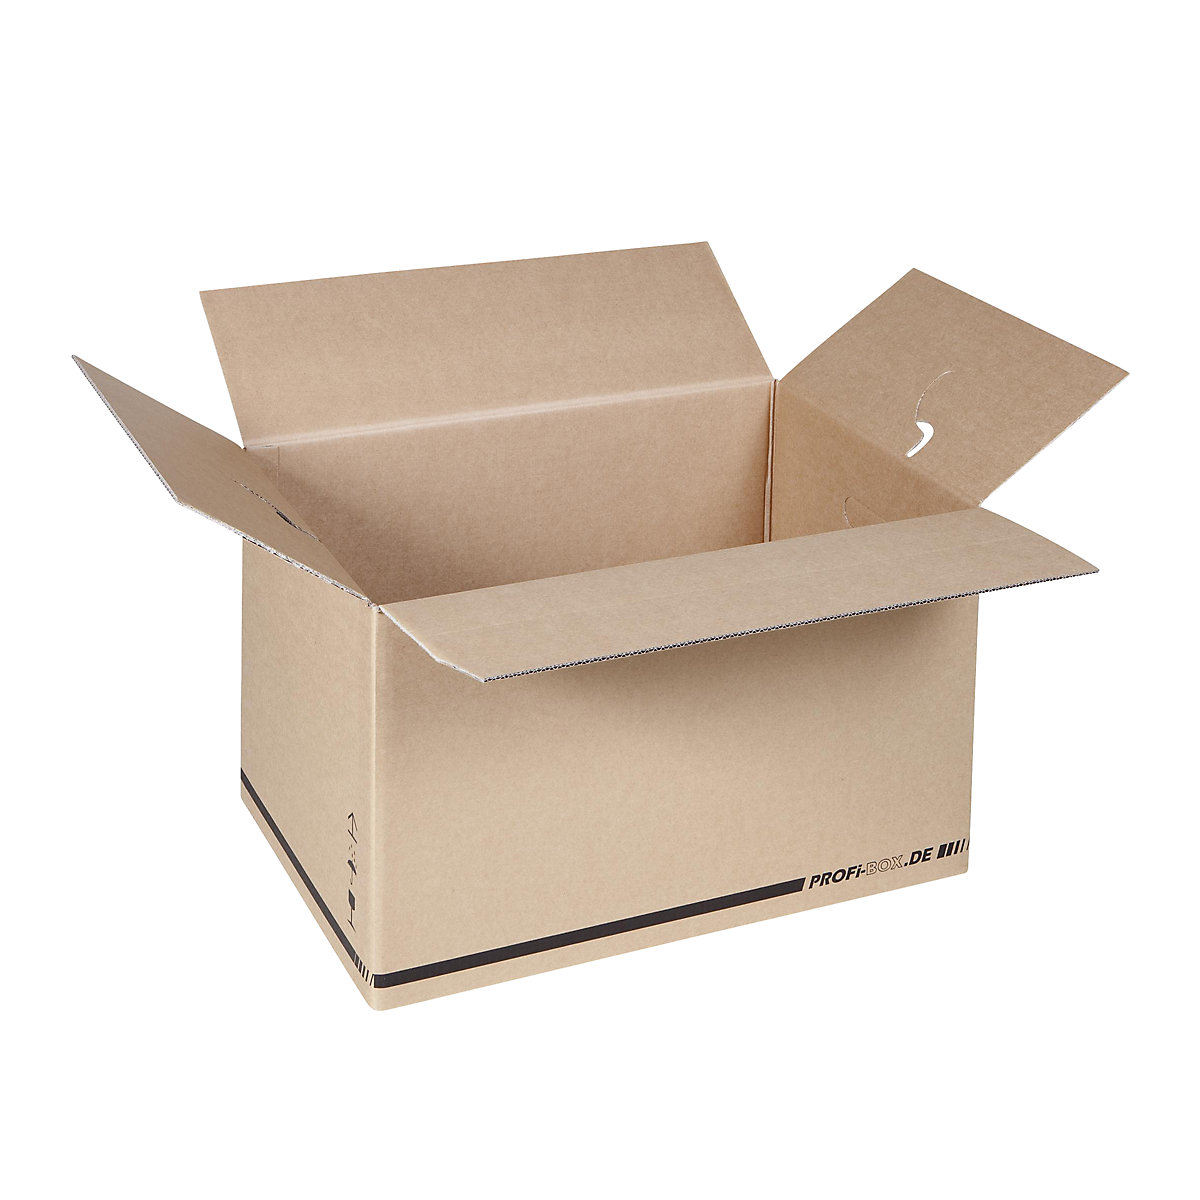 Profesionalne kutije, od 2-valnog kartona, unutarnje dimenzije 574 x 376 x 340 mm, FEFCO 0216, pak. 50 kom.-3